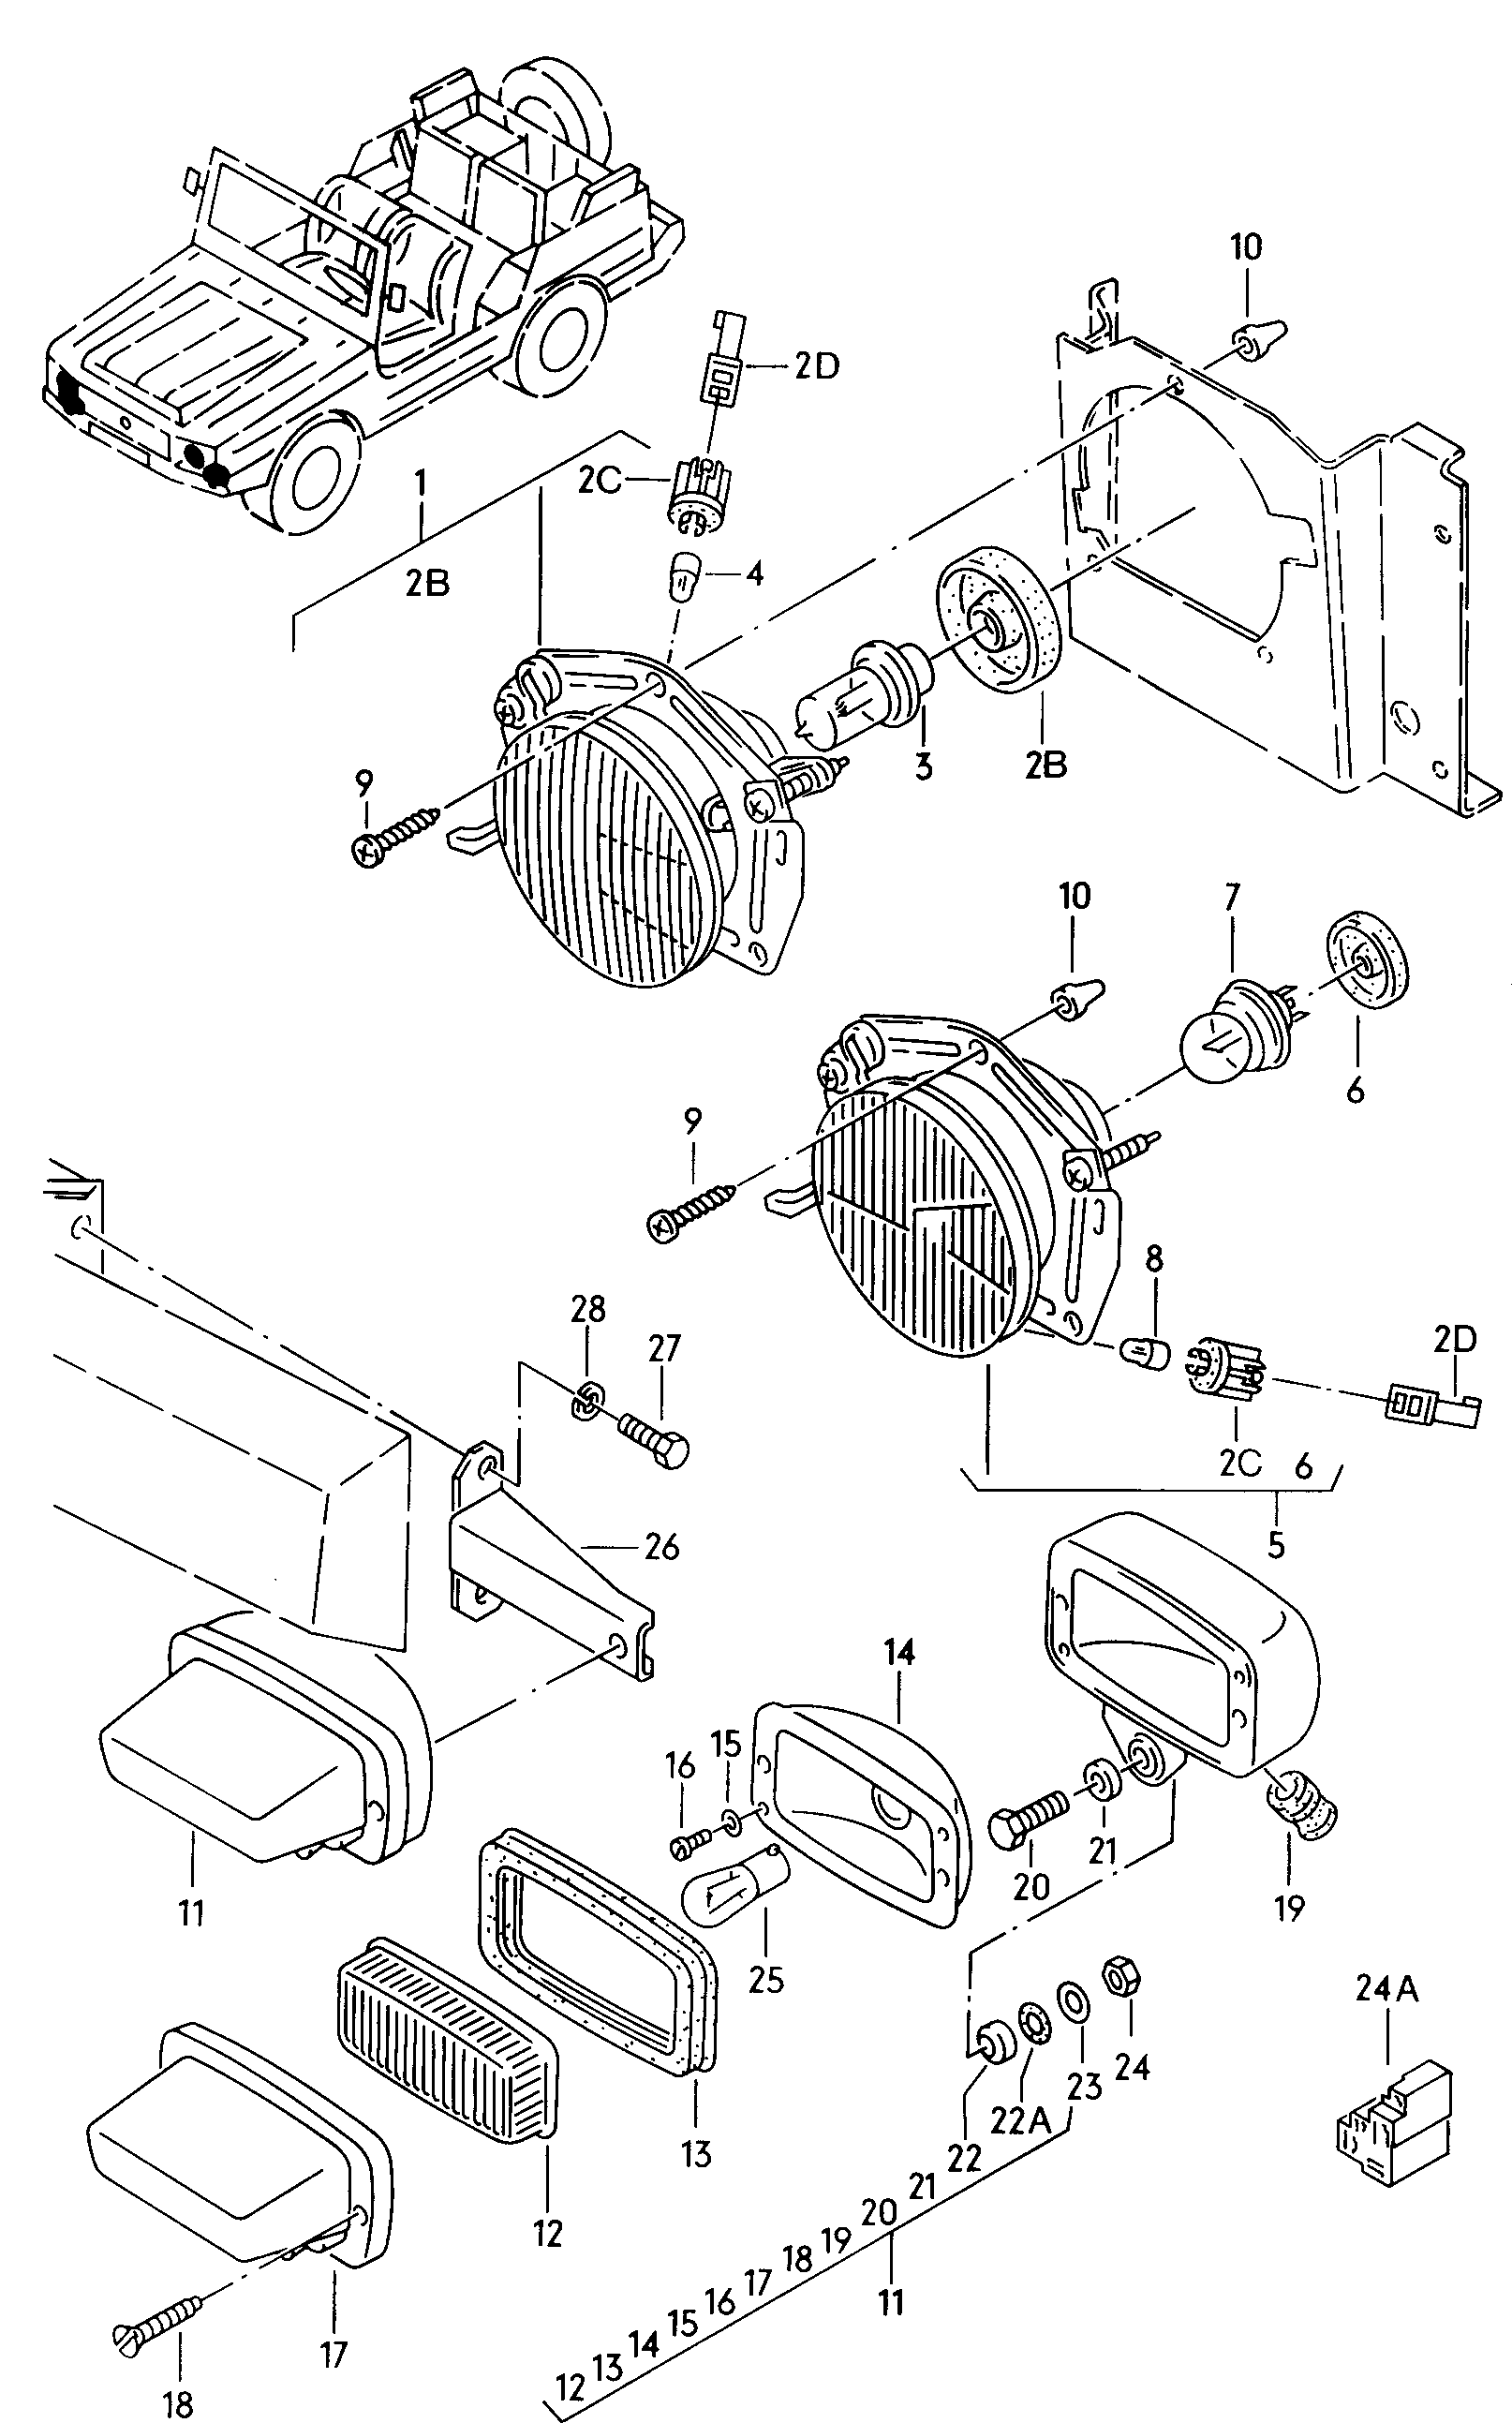 ScheinwerferTarnscheinwerfer  - Mod.181 / Iltis - ilt